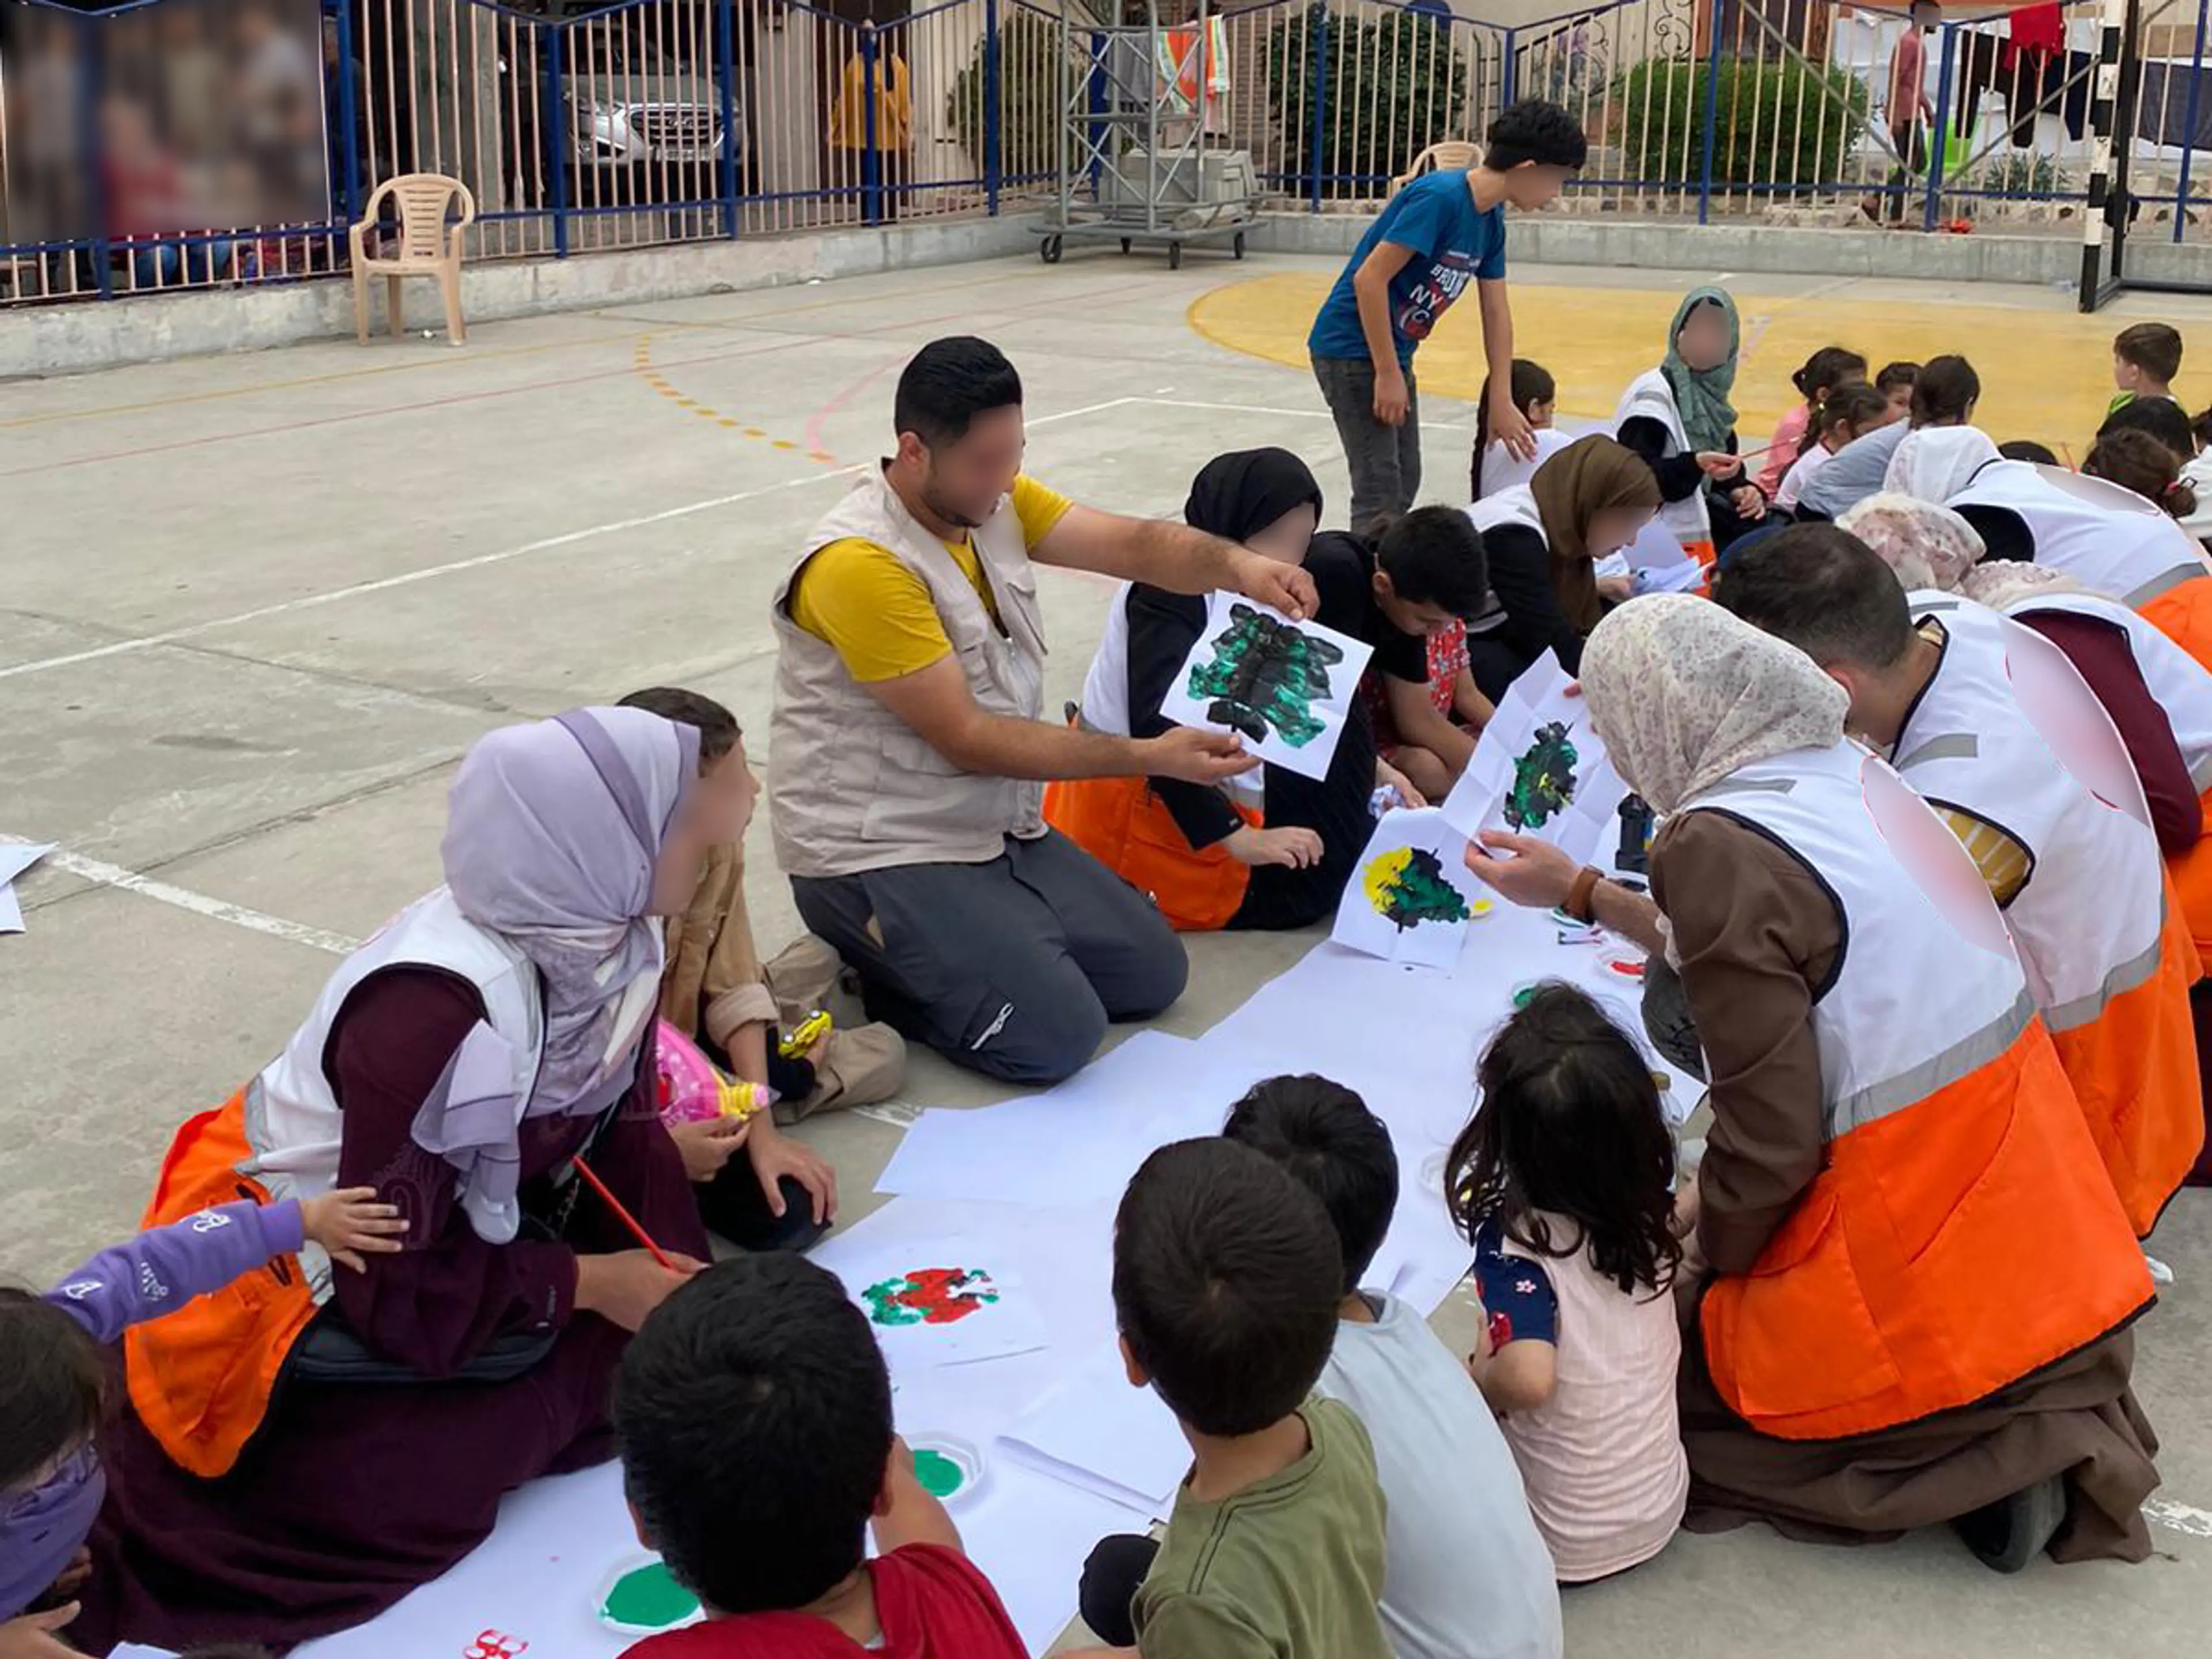 Activities for children in Khan Younis. Gaza